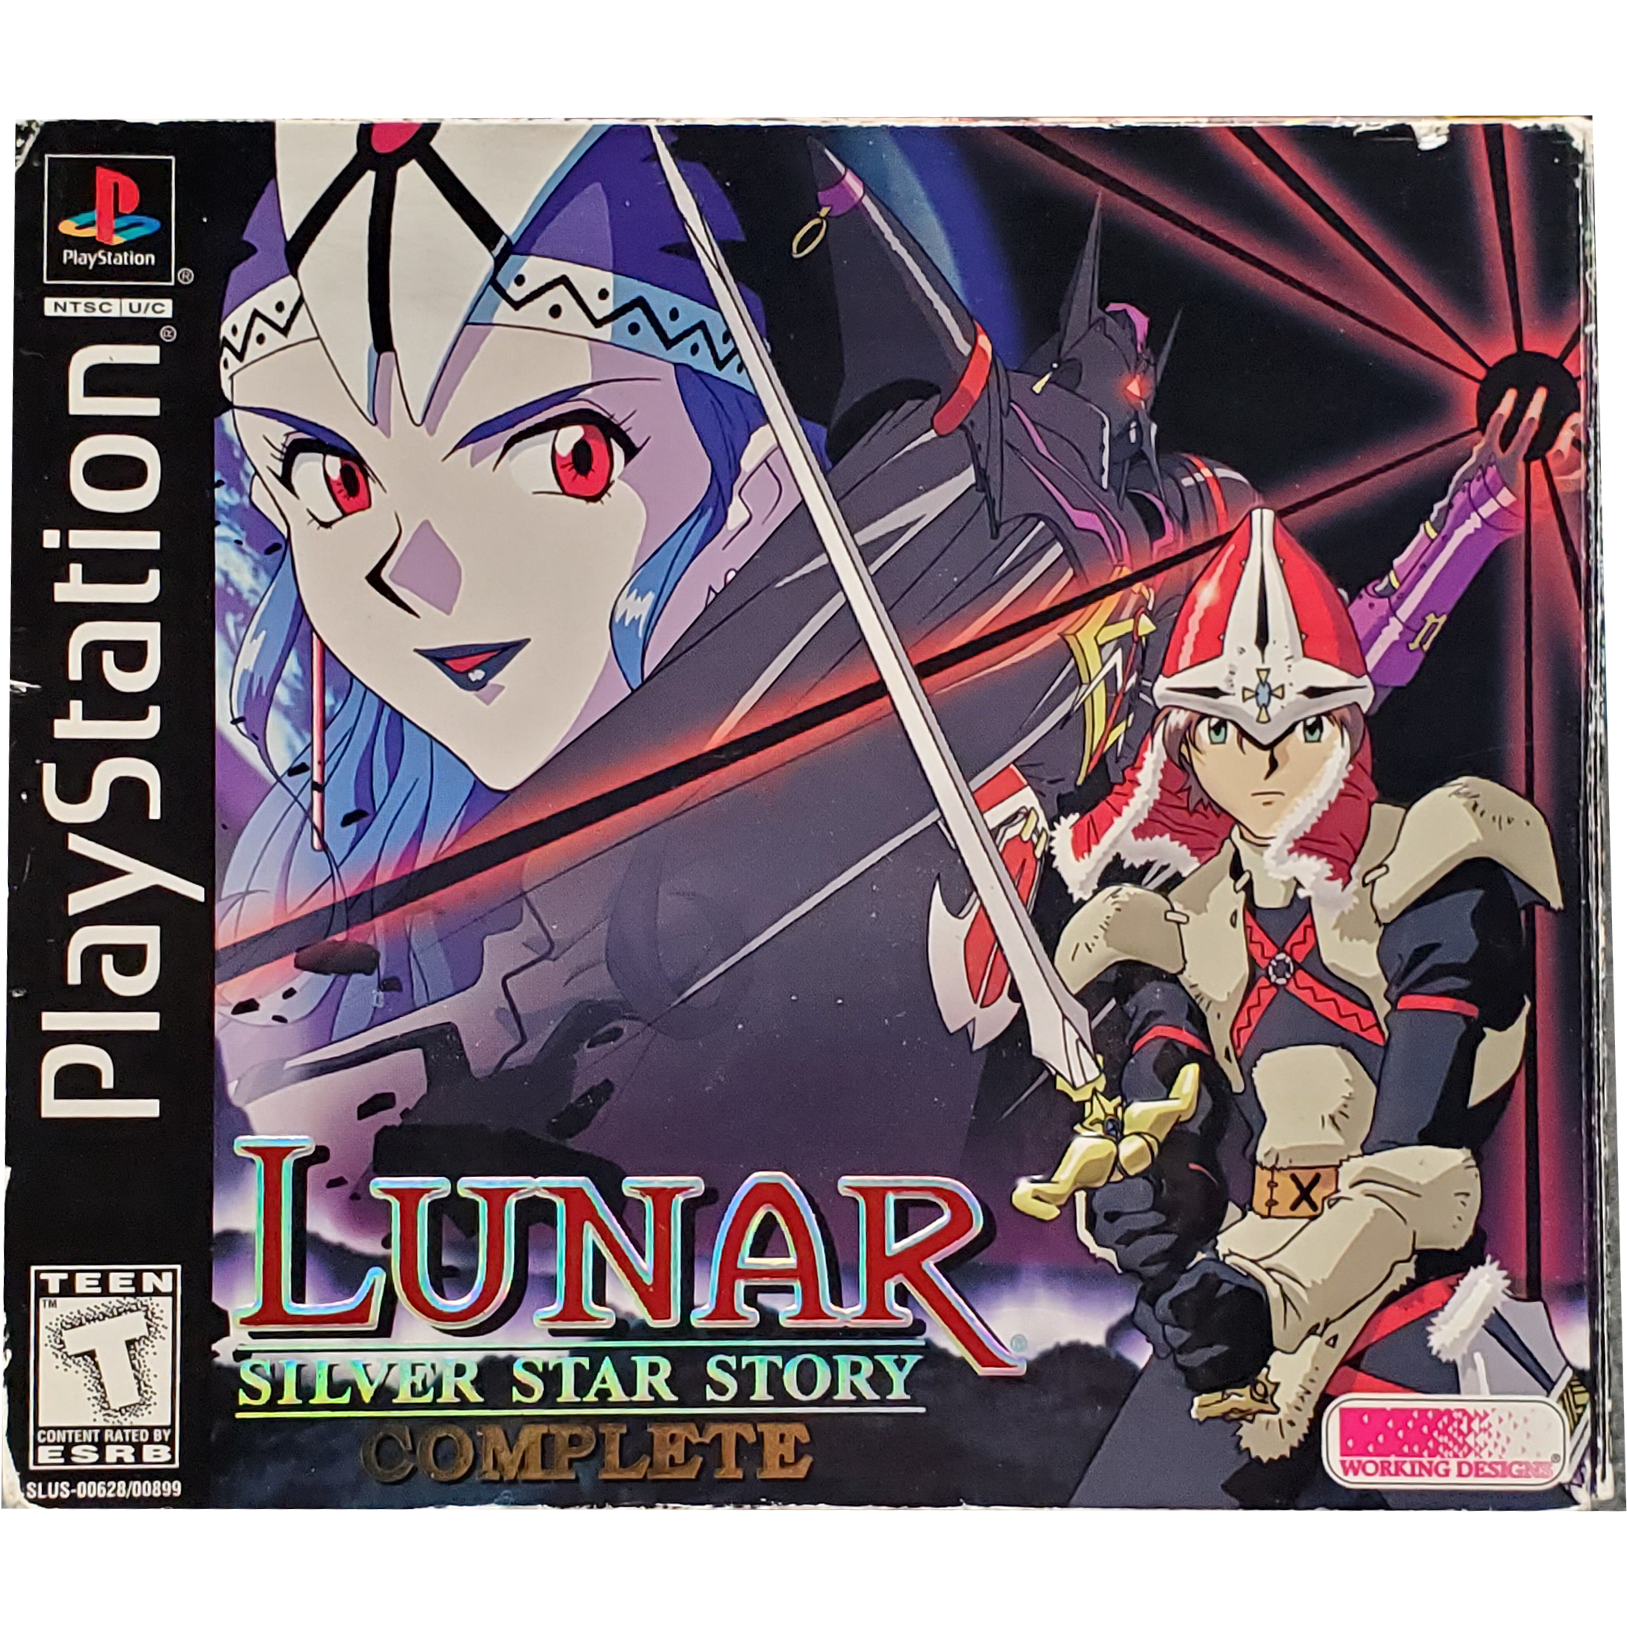 PS1 - L'histoire de Lunar Silver Star terminée